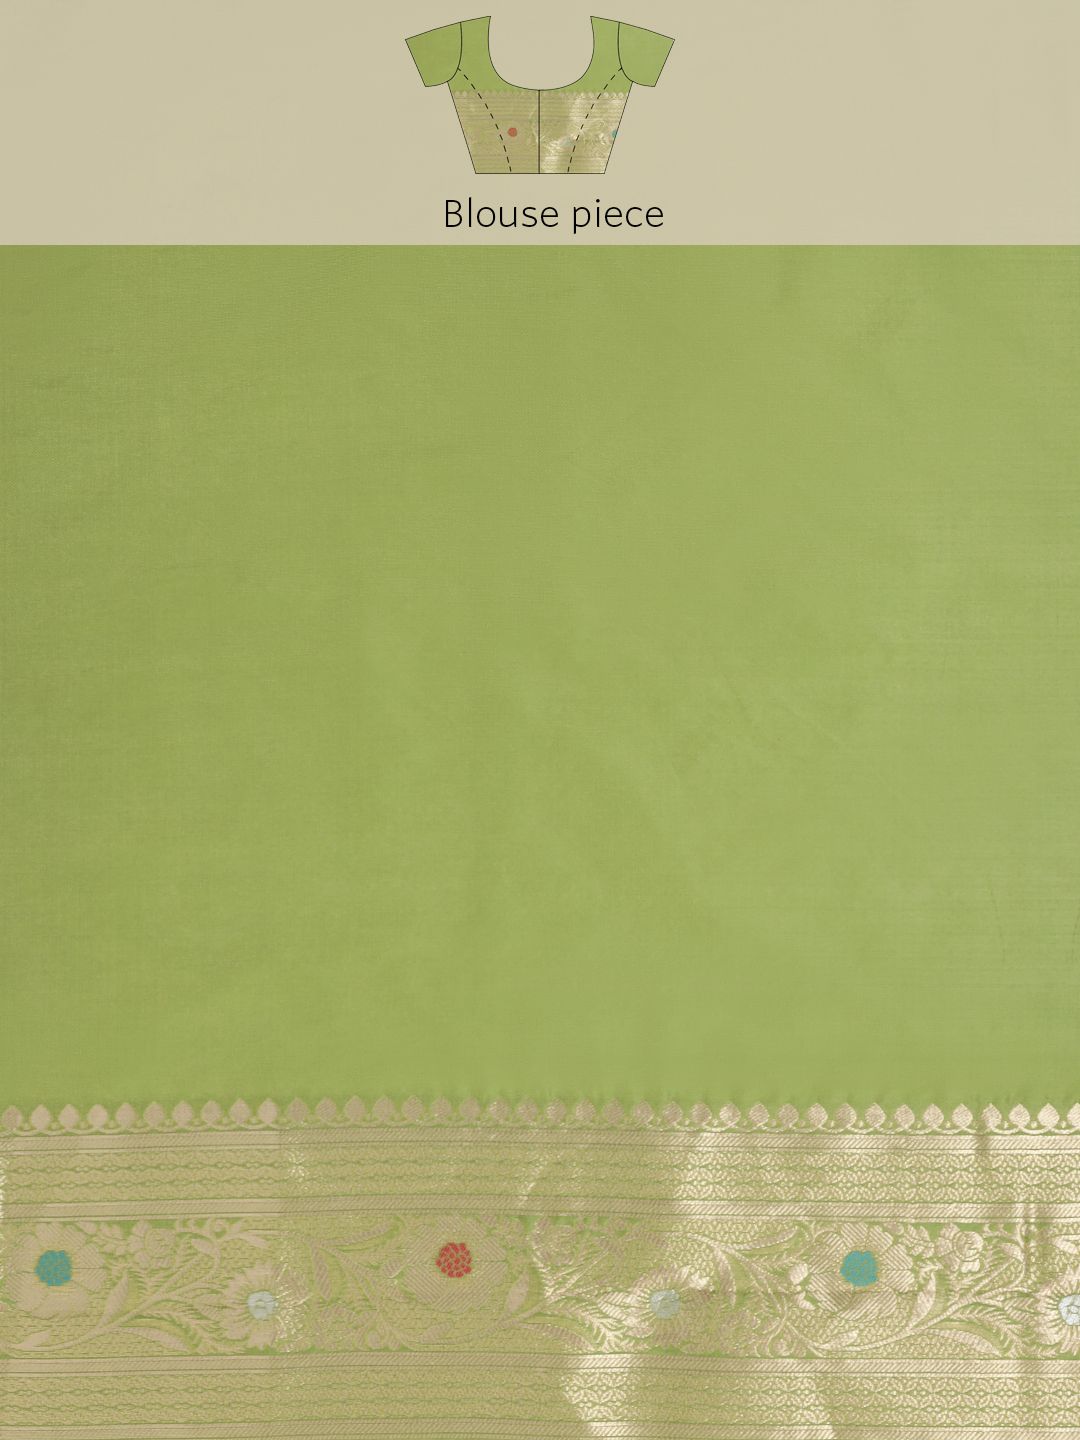 Pista Green Color Soft Silk Banarasi Saree Gorgeous Meenakari Design And Pallu